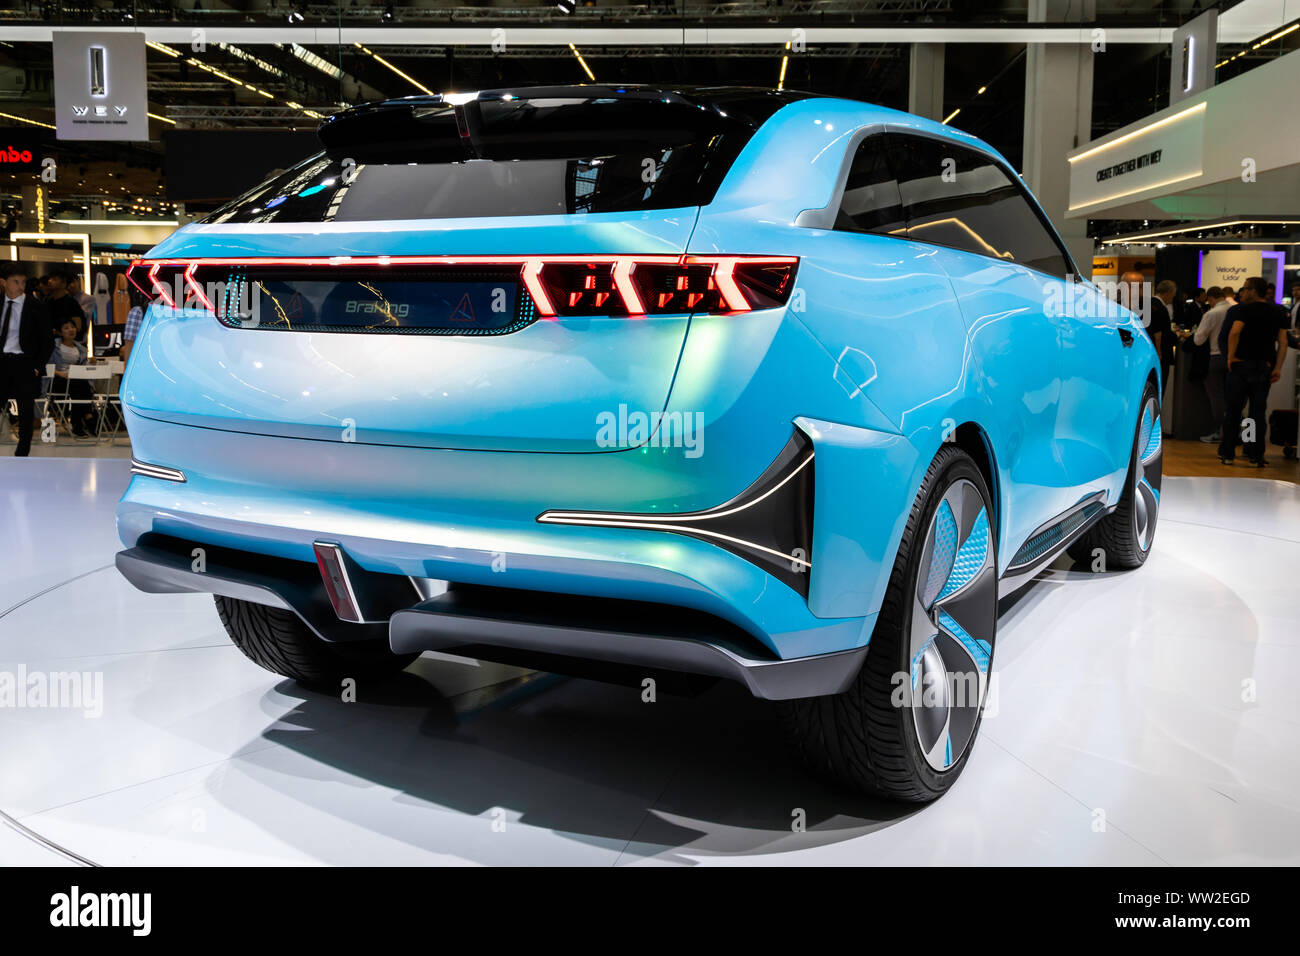 Francfort, Alemania - 10 de septiembre, 2019: Great Wall Motors WEY-X Concept Car exhibieron en el IAA Frankfurt Motor Show 2019. Foto de stock